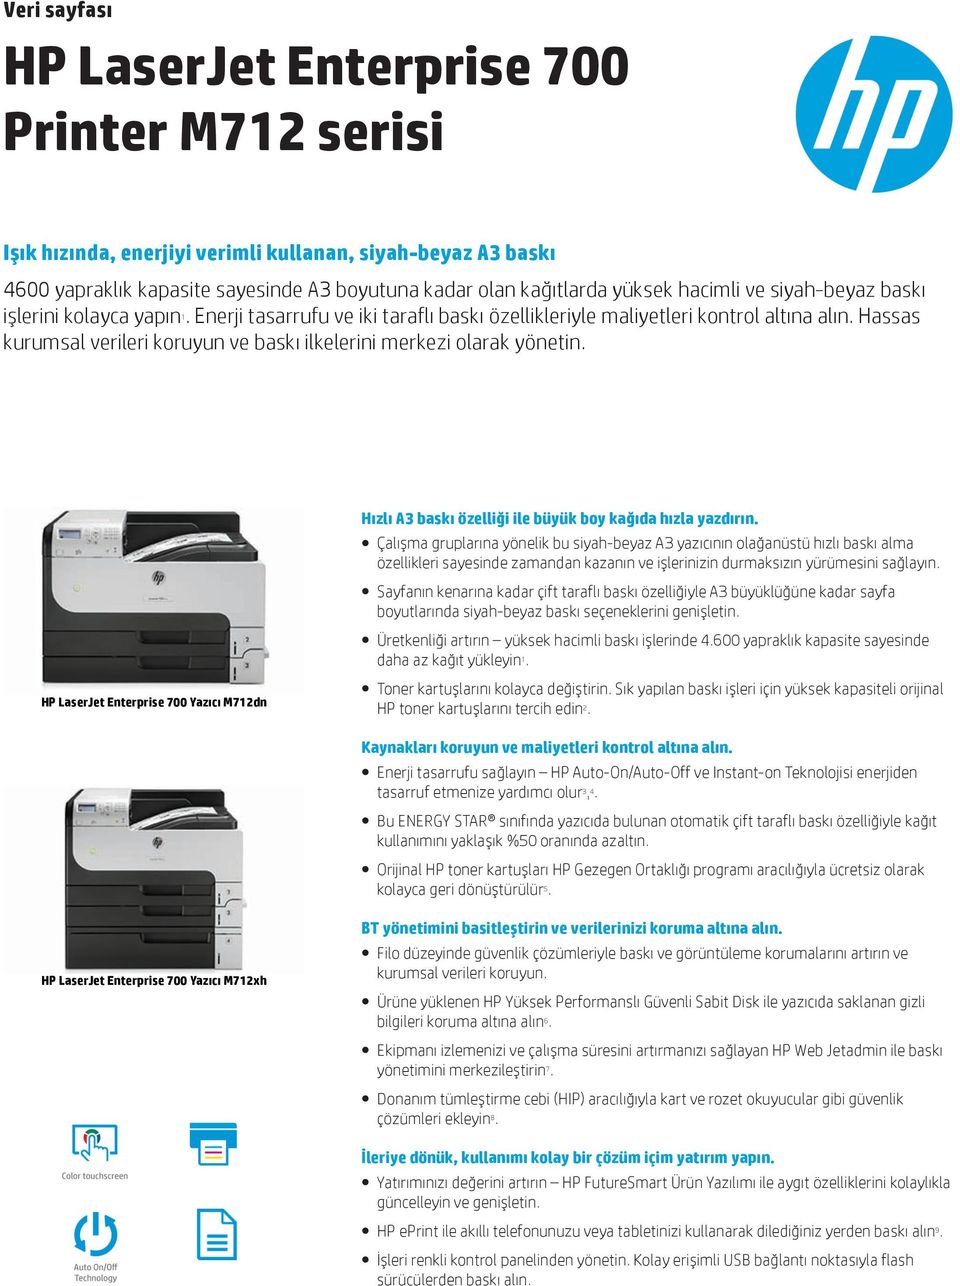 Hassas kurumsal verileri koruyun ve baskı ilkelerini merkezi olarak yönetin. HP LaserJet Enterprise 700 Yazıcı M712dn Hızlı A3 baskı özelliği ile büyük boy kağıda hızla yazdırın.